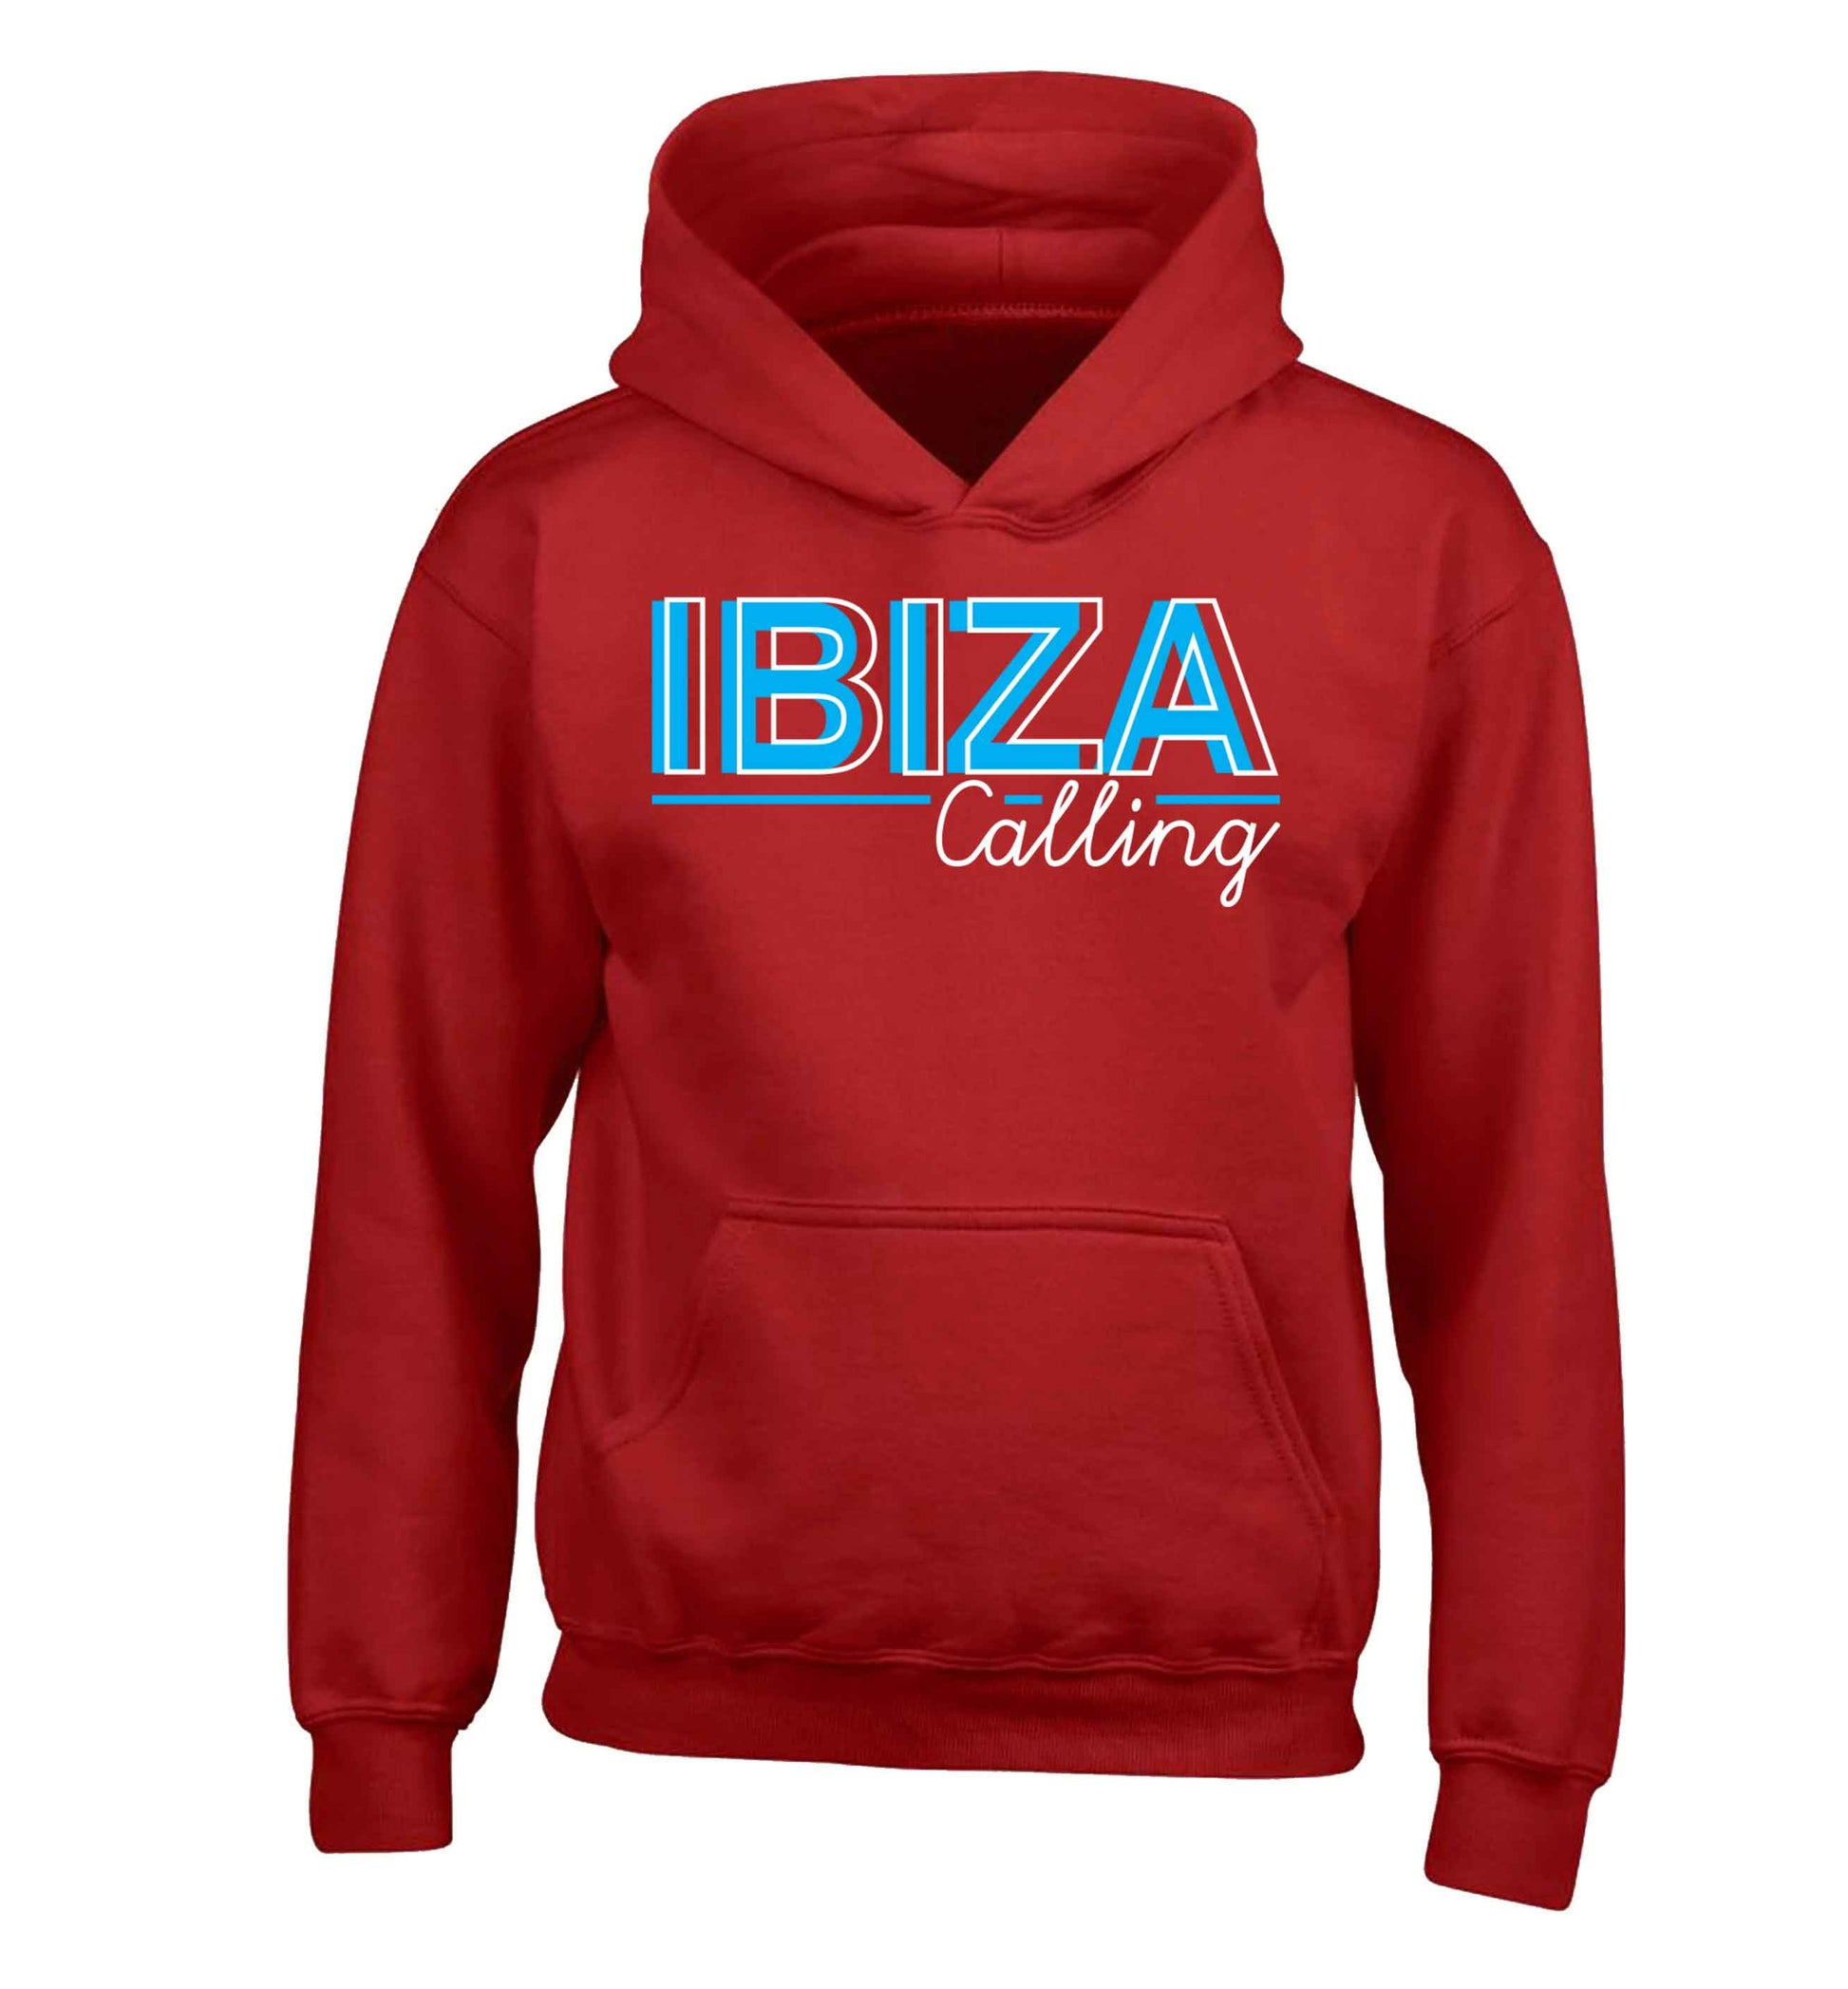 Ibiza calling children's red hoodie 12-13 Years